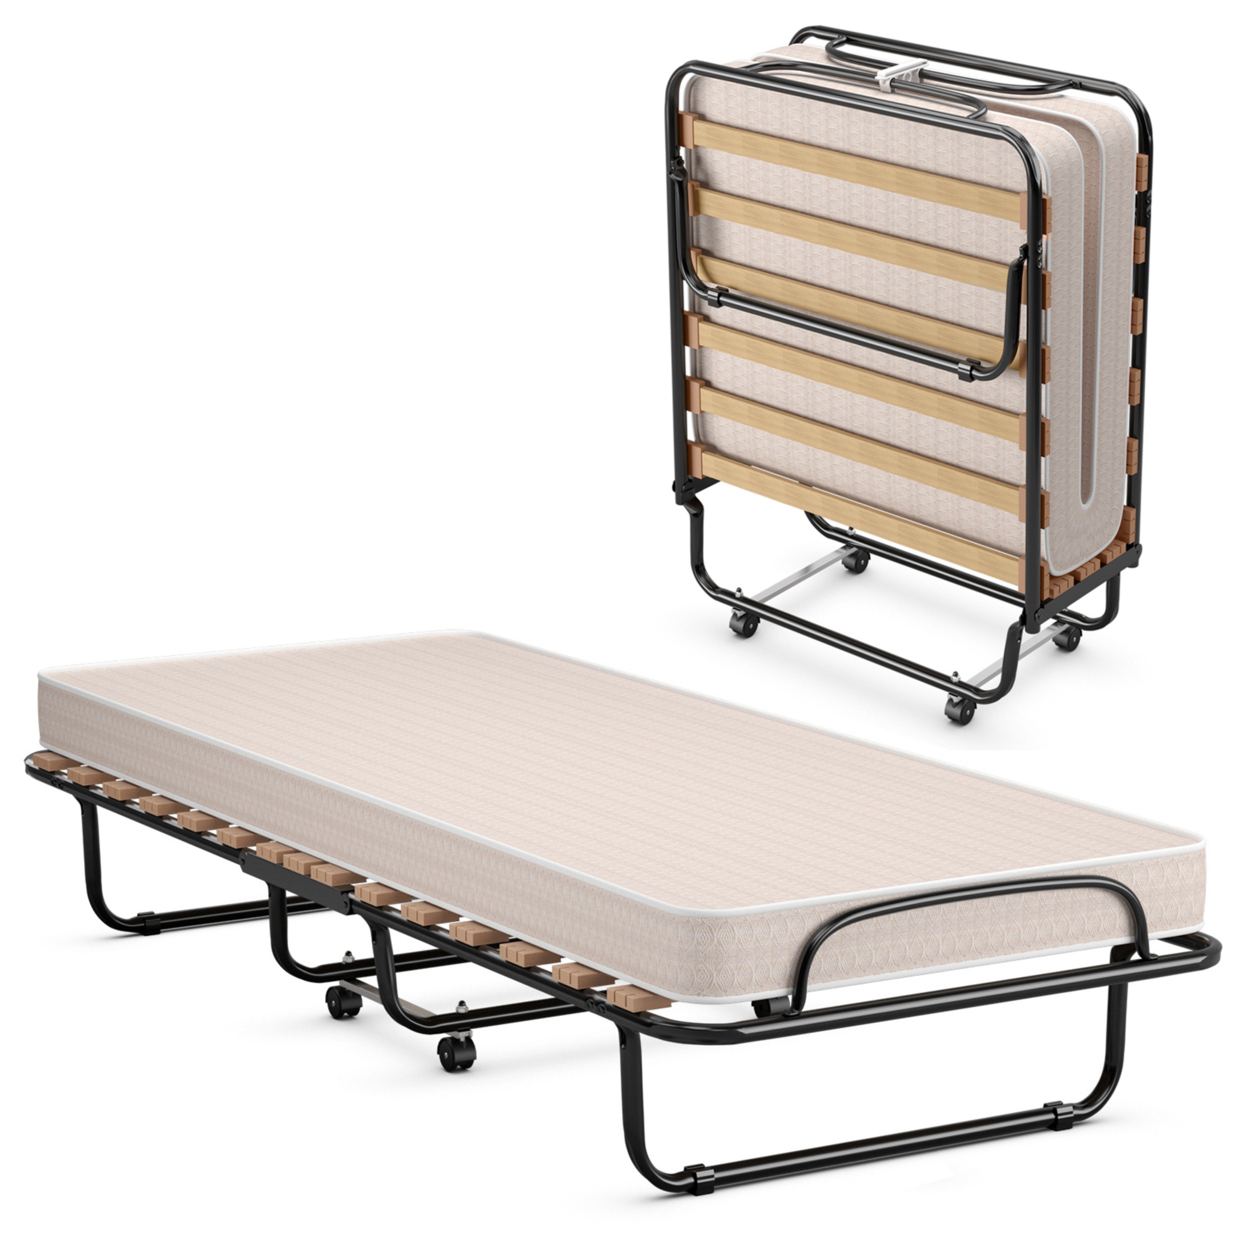 Folding Bed Rollaway Metal Guest Bed Sleeper Made In Italy W/ Memory Foam Mattress - Beige